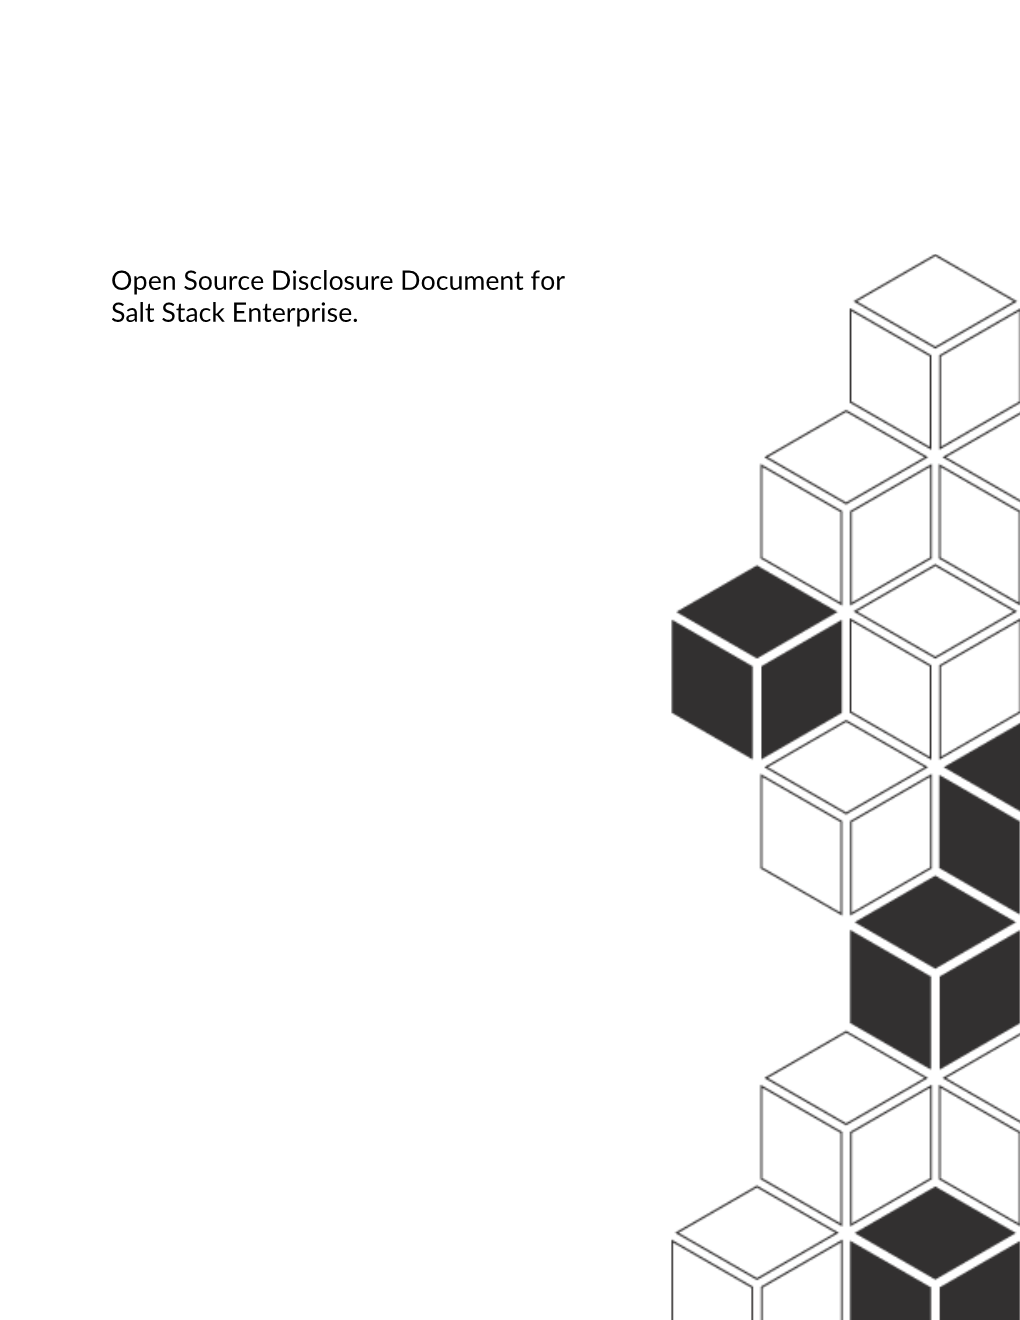 Open Source Disclosure Document for Saltstack Enterprise